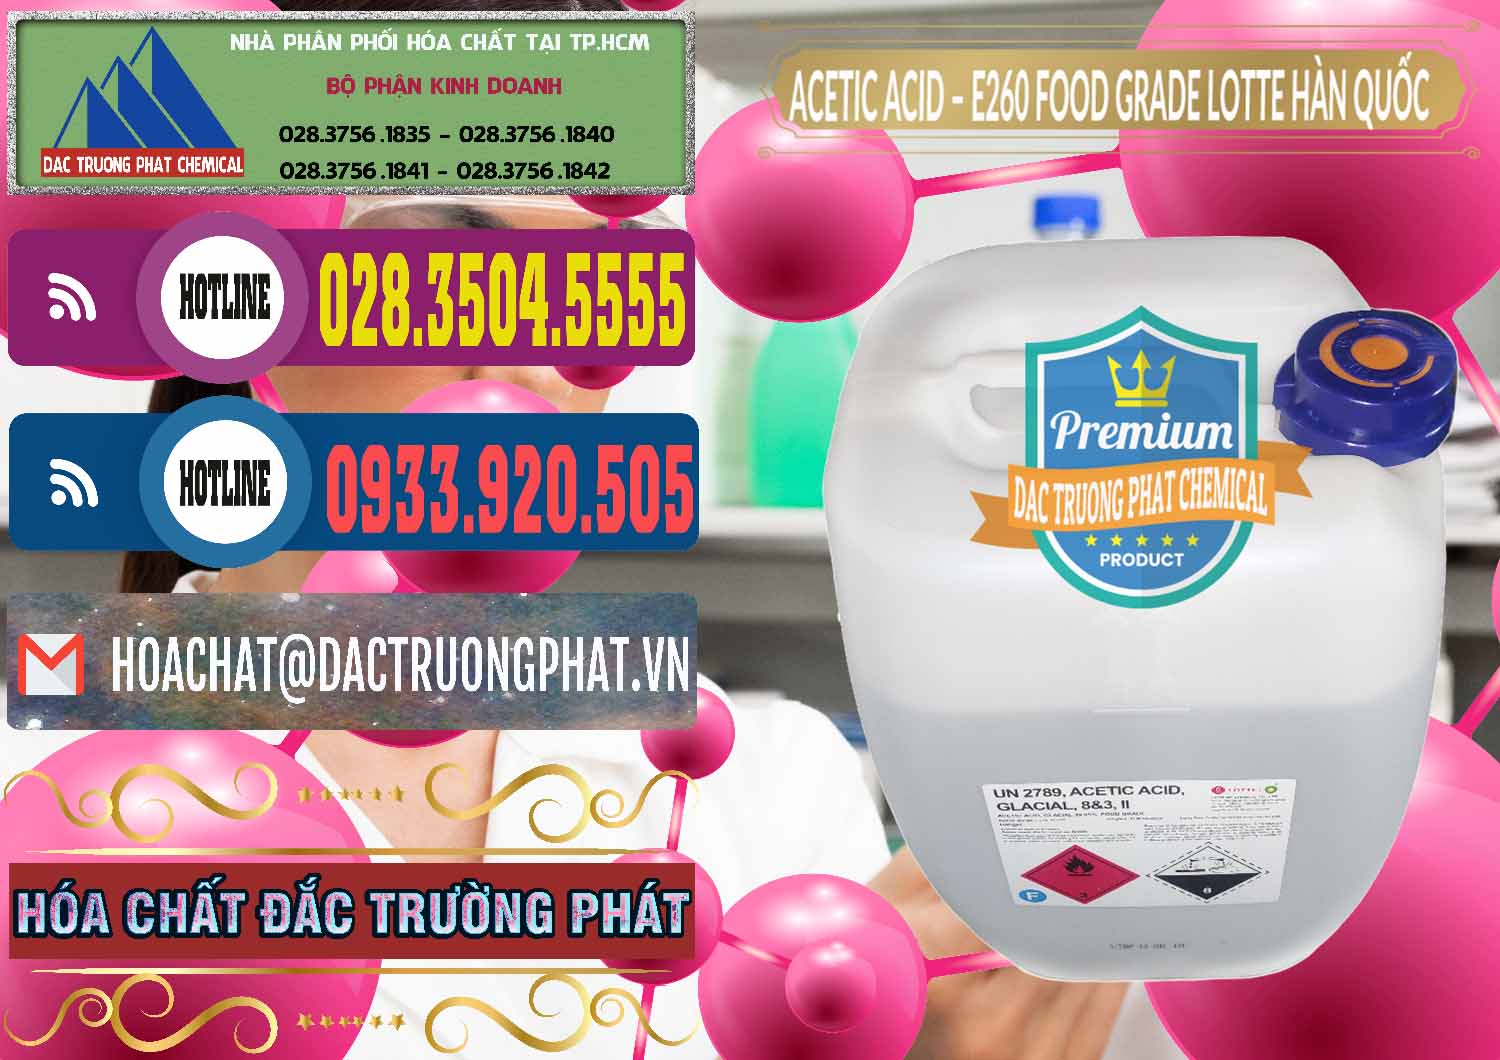 Chuyên cung cấp ( bán ) Acetic Acid – Axit Acetic E260 Food Grade Hàn Quốc Lotte Korea - 0003 - Cty chuyên phân phối _ cung ứng hóa chất tại TP.HCM - muabanhoachat.com.vn